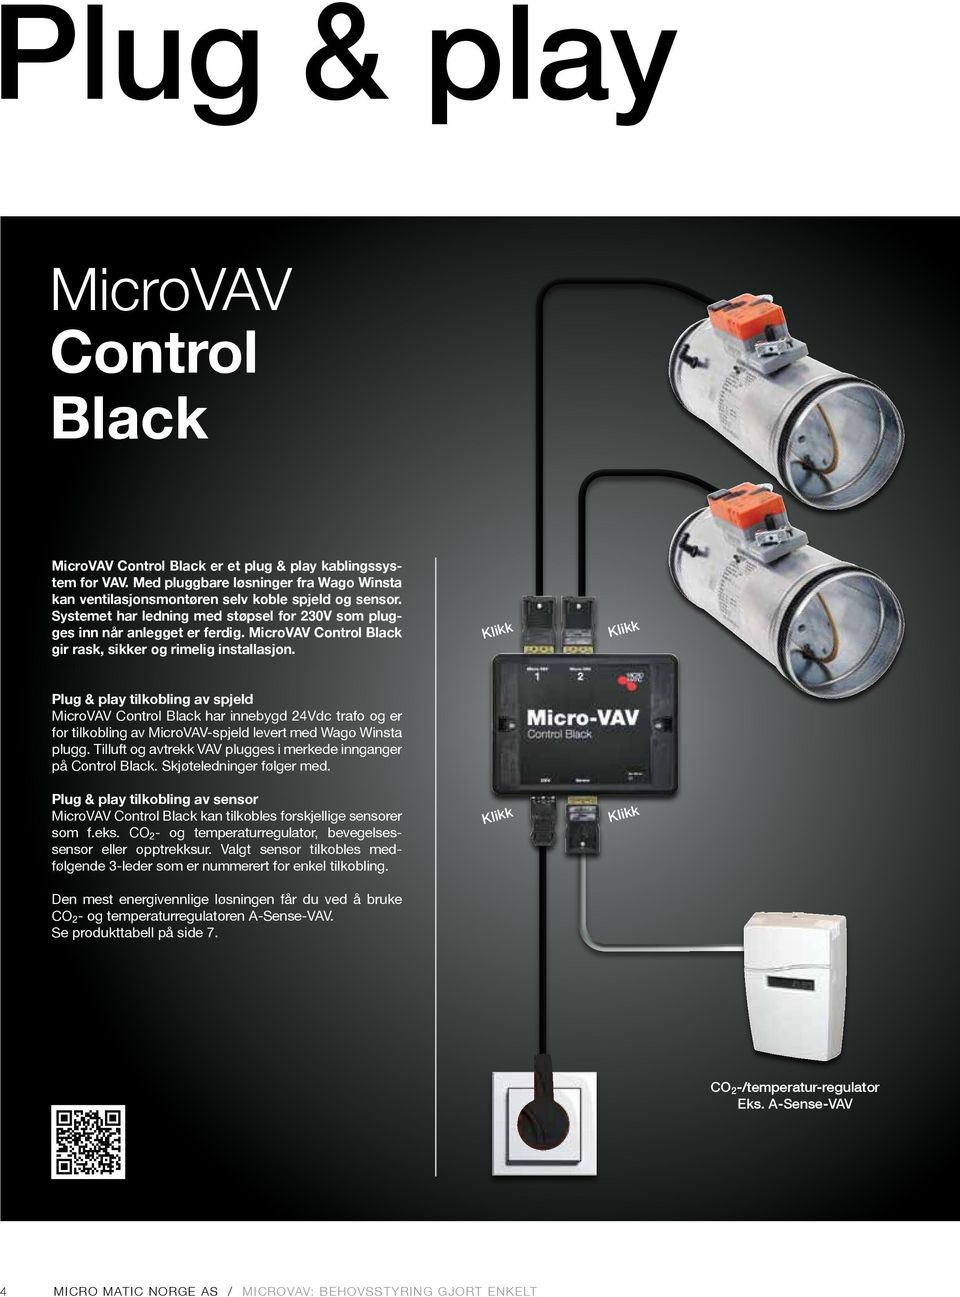 Plug & play tilkobling av spjeld MicroVAV Control Black har innebygd 24Vdc trafo og er for tilkobling av MicroVAV-spjeld levert med Wago Winsta plugg.